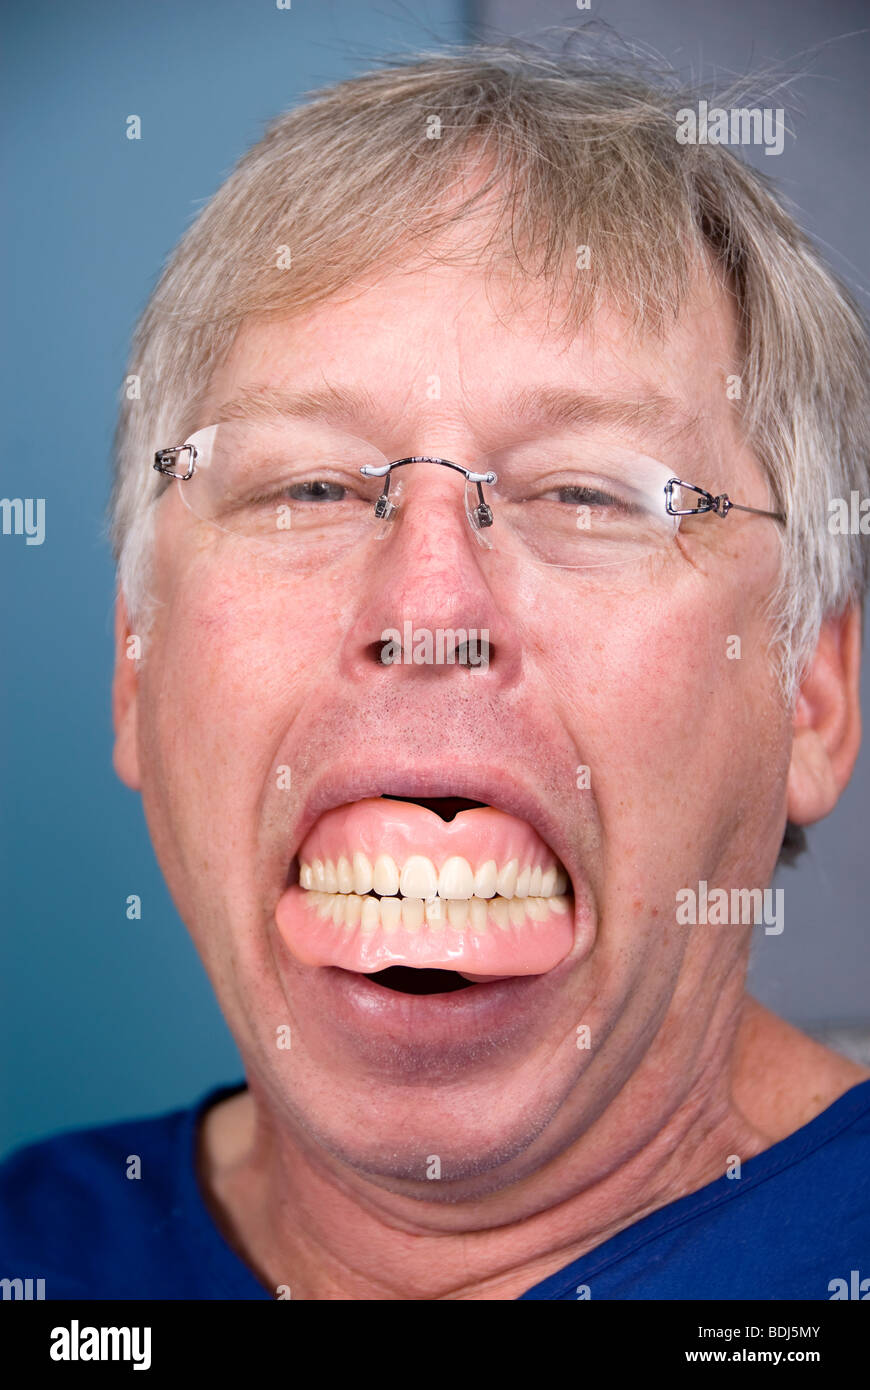 Un hombre muestra sus dientes postizos (prótesis) que muestra lo que ocurre cuando no se tiene una buena higiene dental. Foto de stock